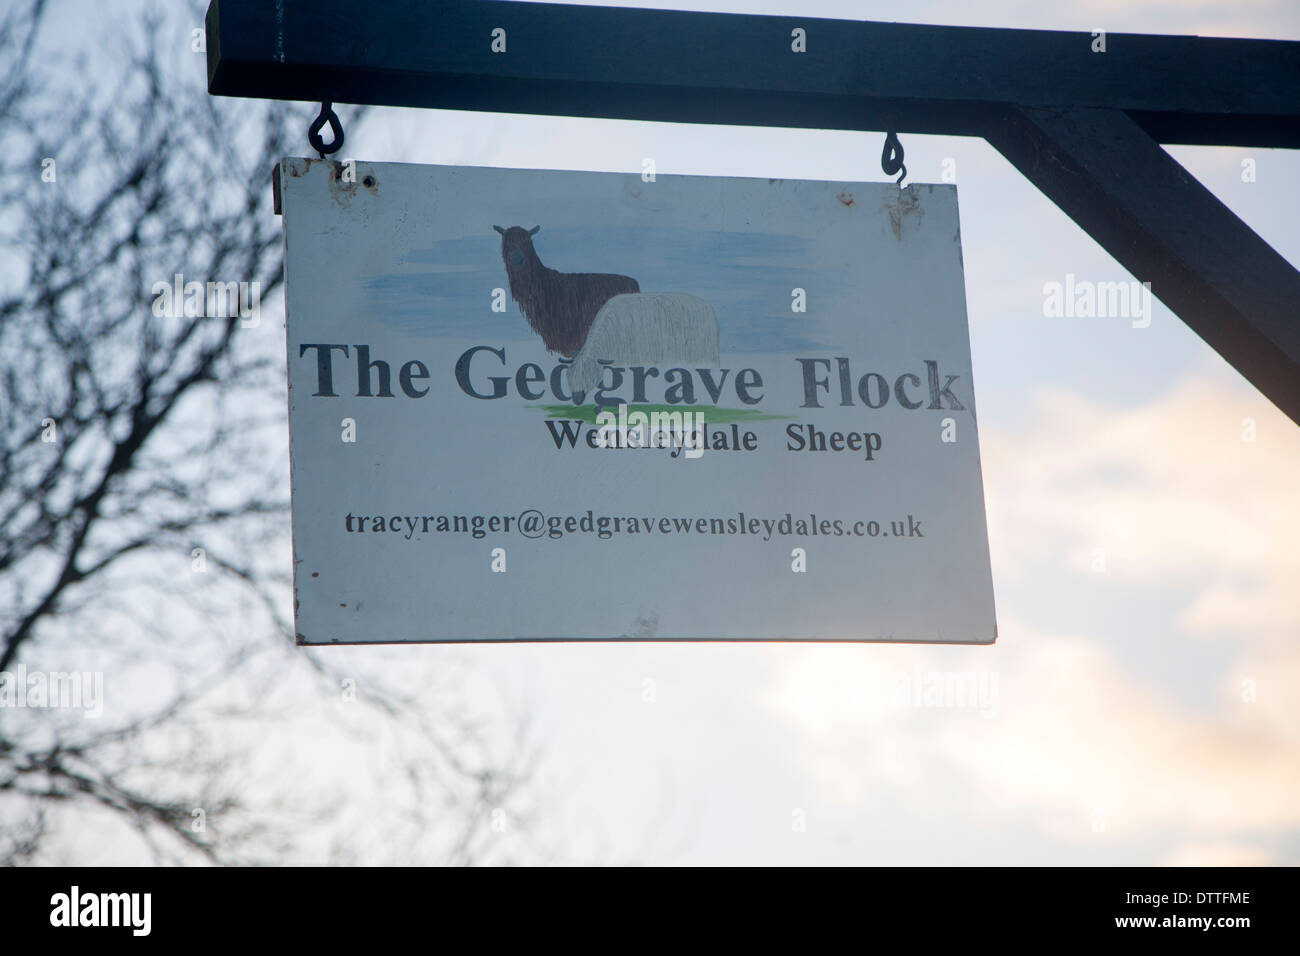 Signe pour le troupeau de moutons Gedgrave Wensleydale, Suffolk, Angleterre Banque D'Images